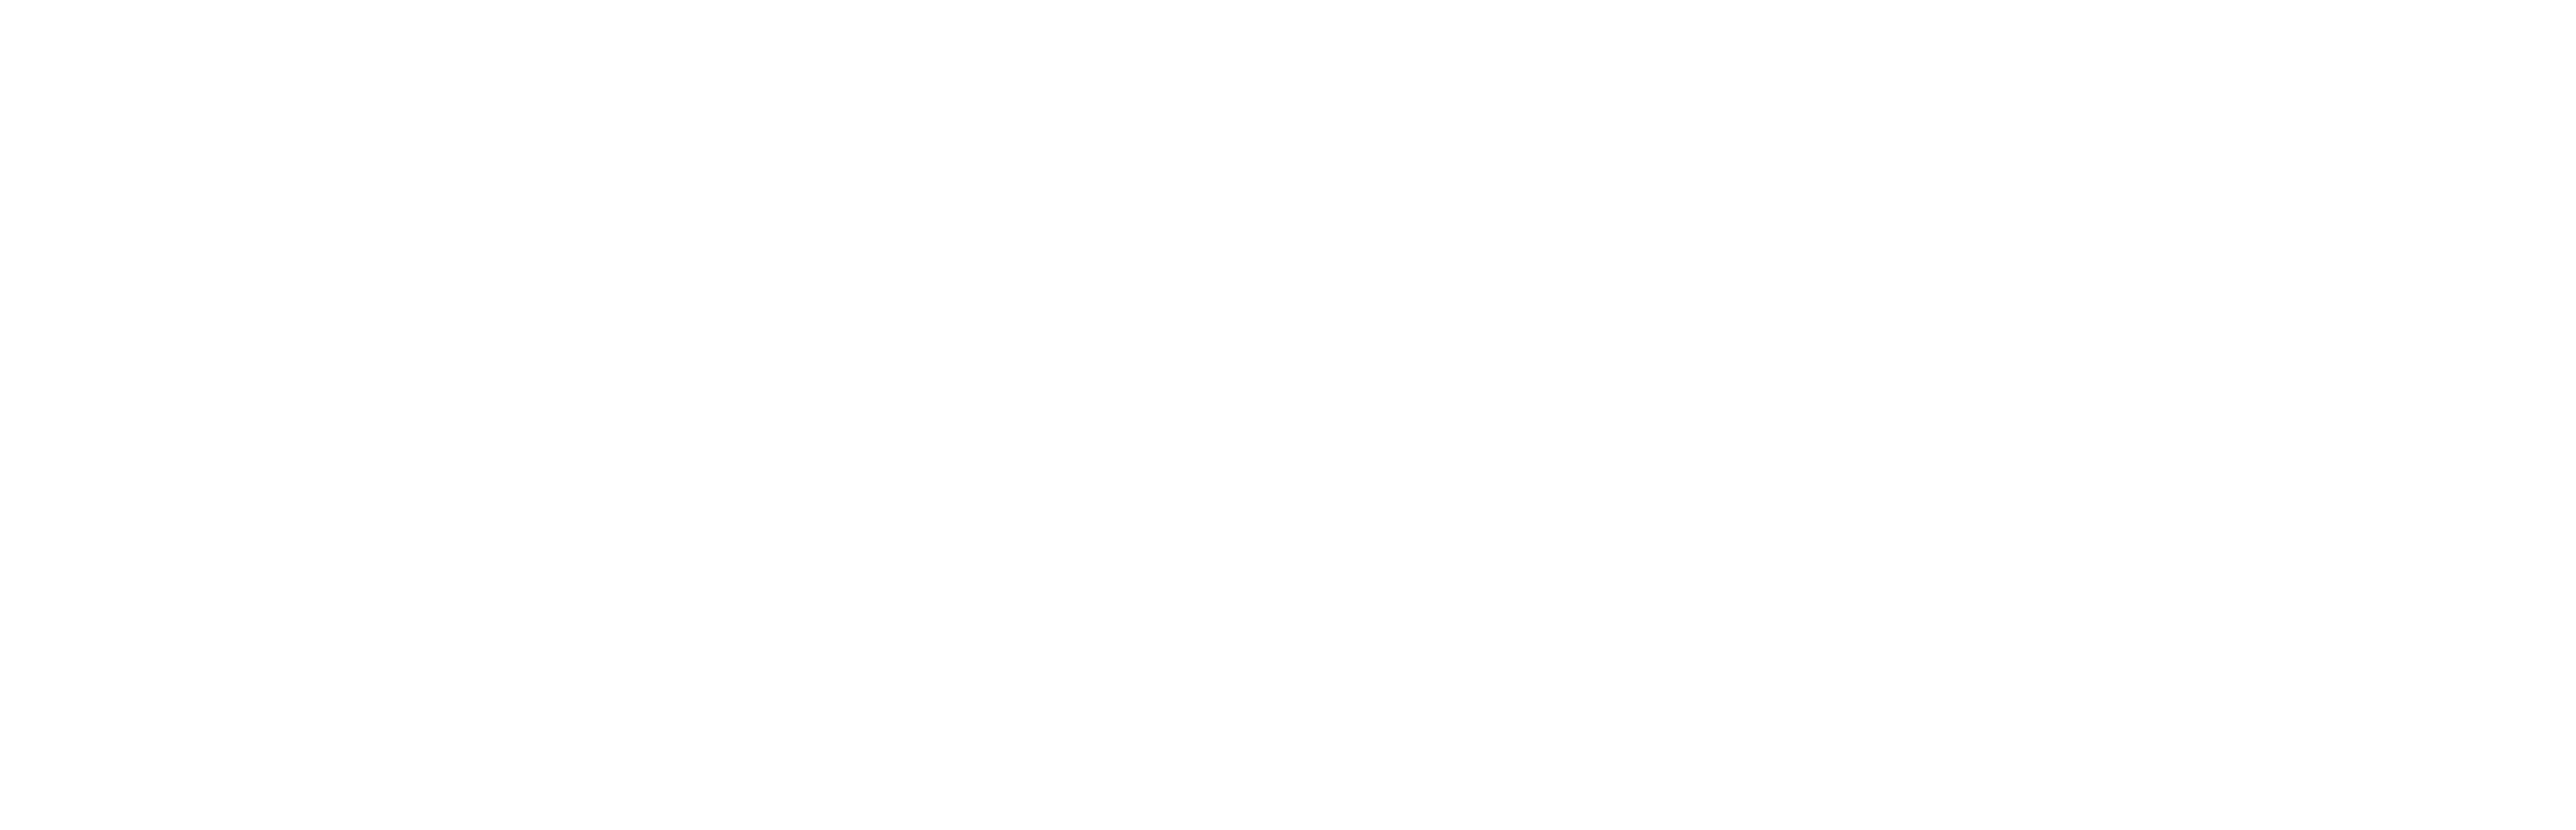 Women's Race